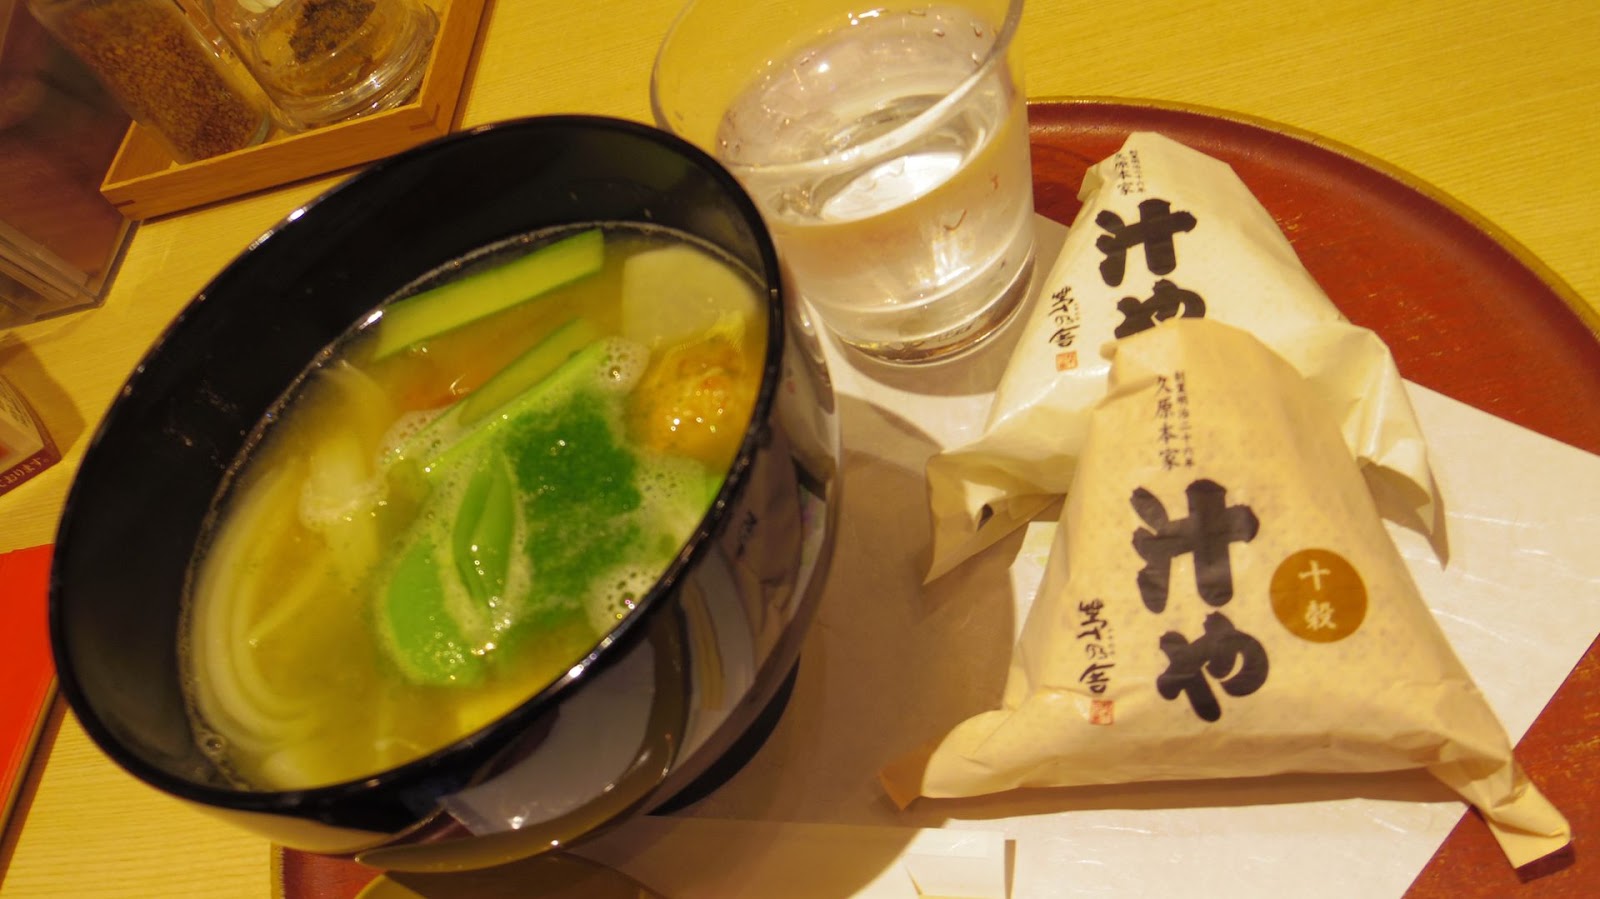 ふらり マン かつひとの食べ歩き 鶏団子味噌汁とおにぎりでほっこり幸せ 東京ミッドタウン 茅乃舎 汁や